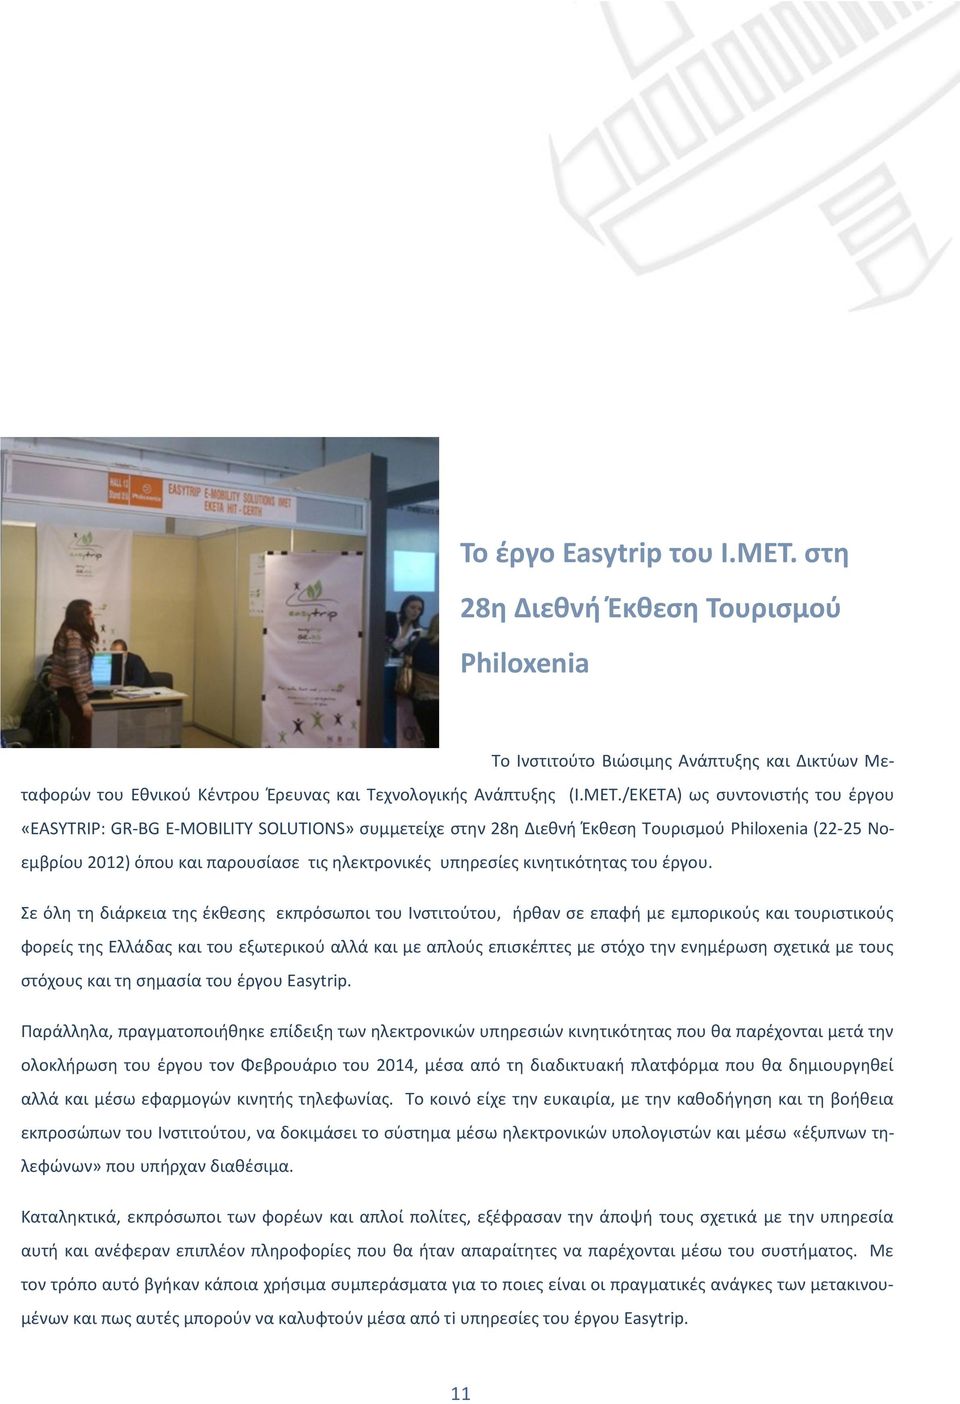 /ΕΚΕΤΑ) ως συντονιστής του έργου «EASYTRIP: GR-BG E-MOBILITY SOLUTIONS» συμμετείχε στην 28η Διεθνή Έκθεση Τουρισμού Philoxenia (22-25 Νοεμβρίου 2012) όπου και παρουσίασε τις ηλεκτρονικές υπηρεσίες